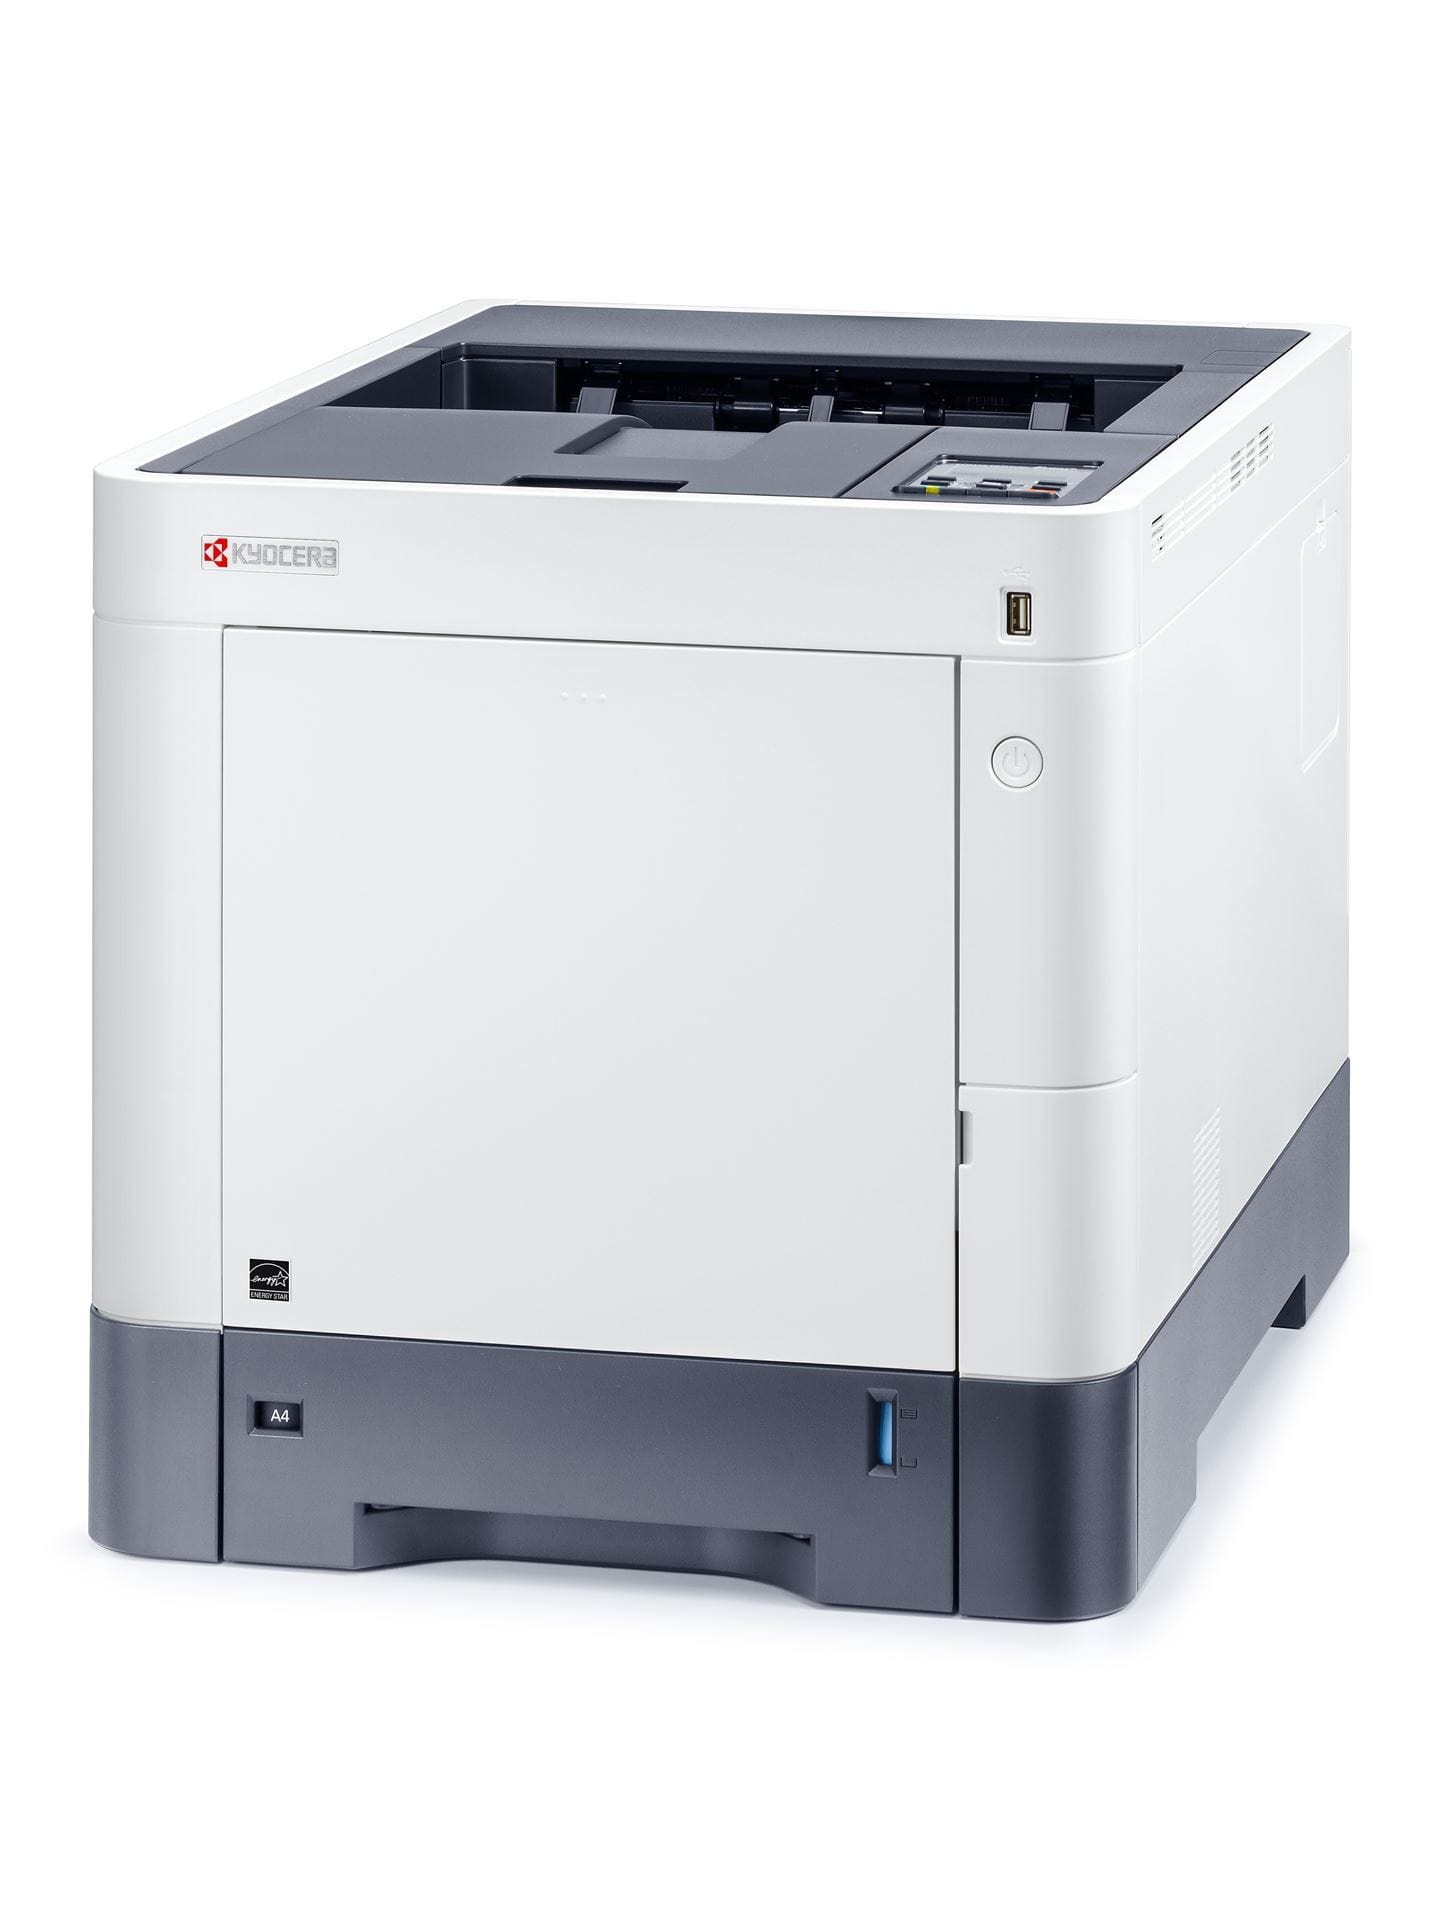 Цветной Лазерный принтер Kyocera P6230cdn (A4, 1200 dpi, 1024 Mb, 30 ppm,  дуплекс, USB 2.0, Gigabit Ethernet) продажа только с дополнительным тонером-25303